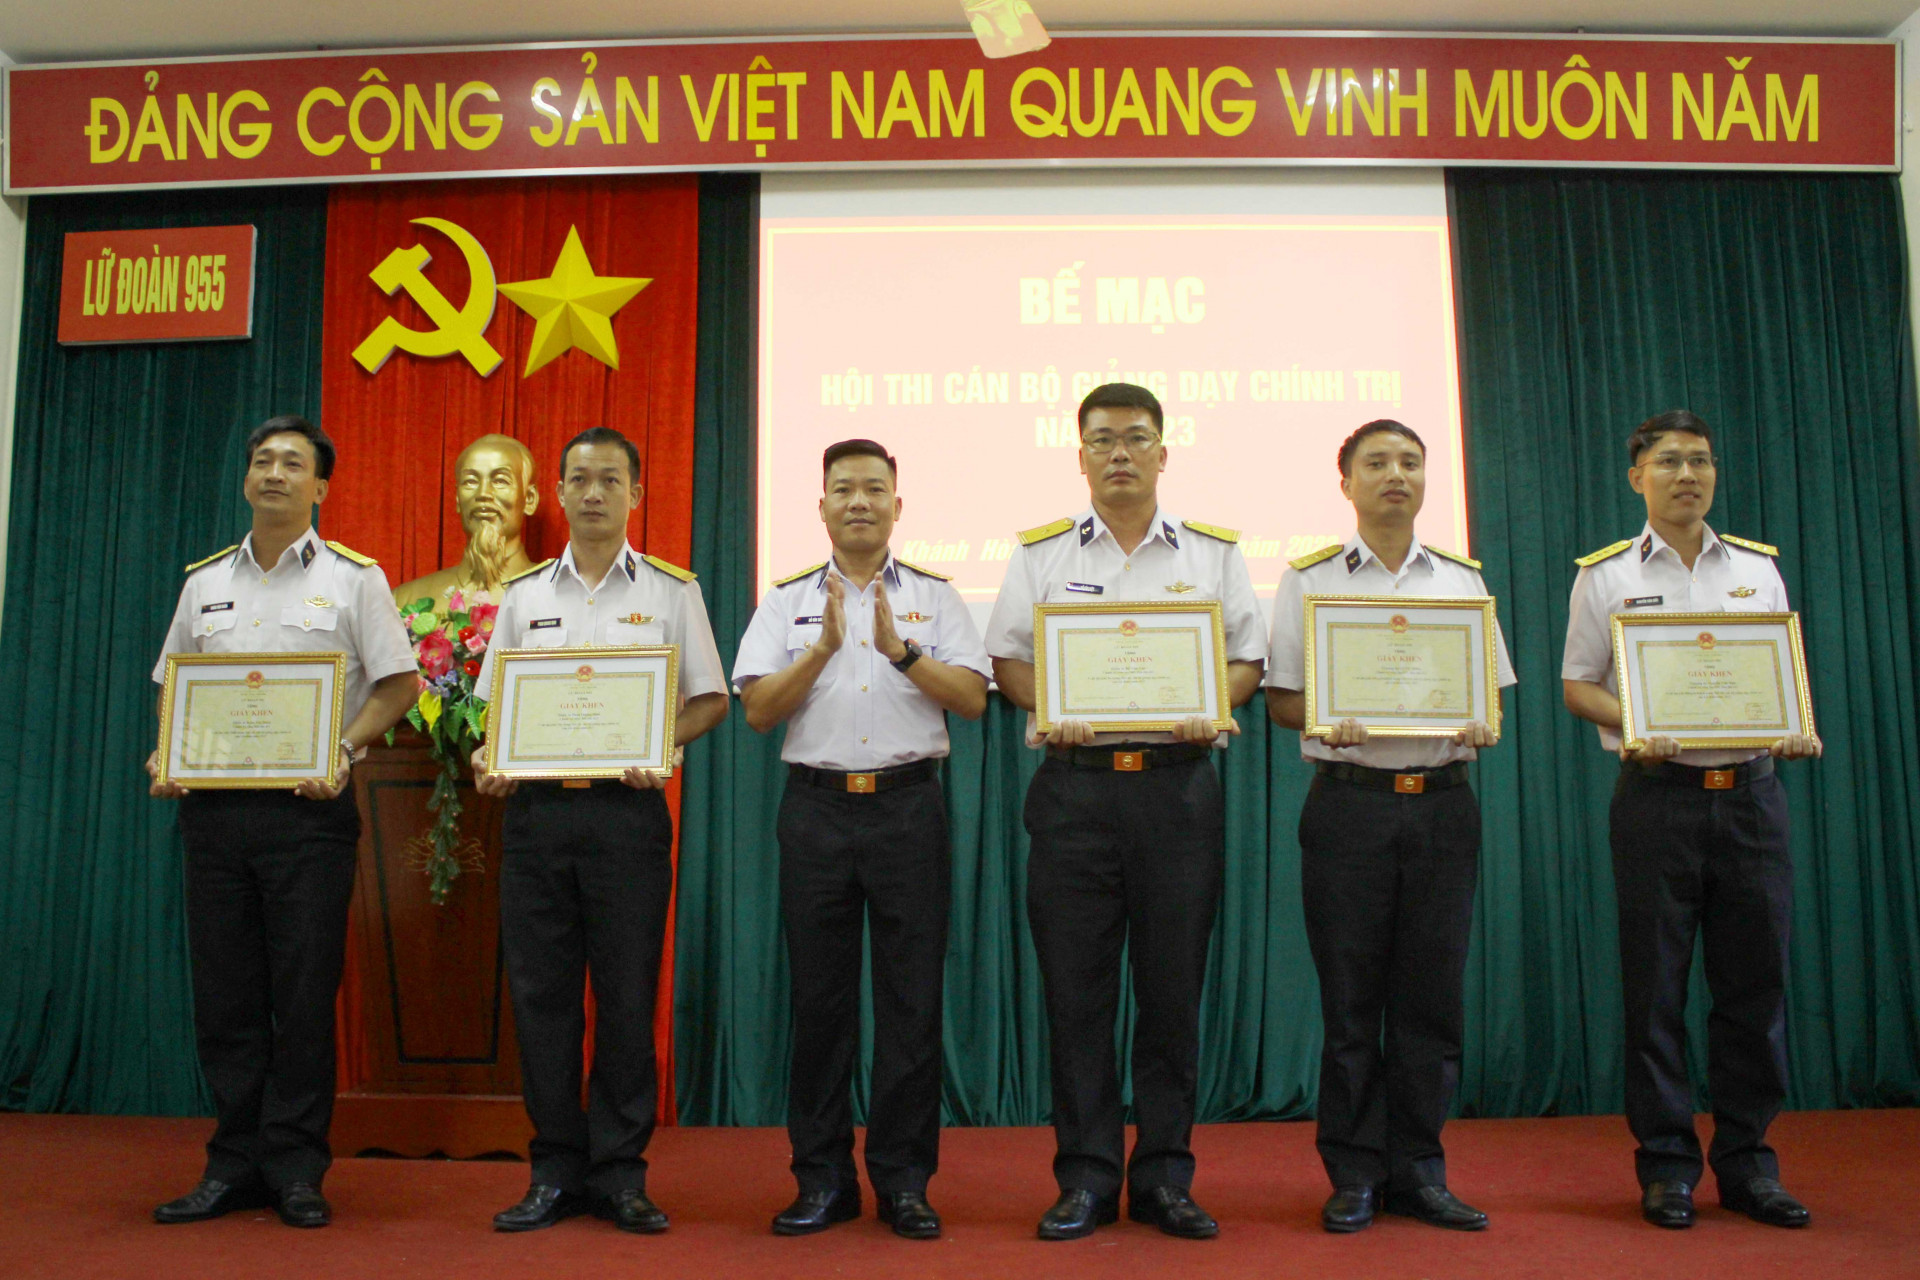 Thủ trưởng lữ đoàn khen thưởng các cá nhân đạt thành tích cao trong hội thi cán bộ giảng dạy chính trị giỏi cấp lữ đoàn năm 2023